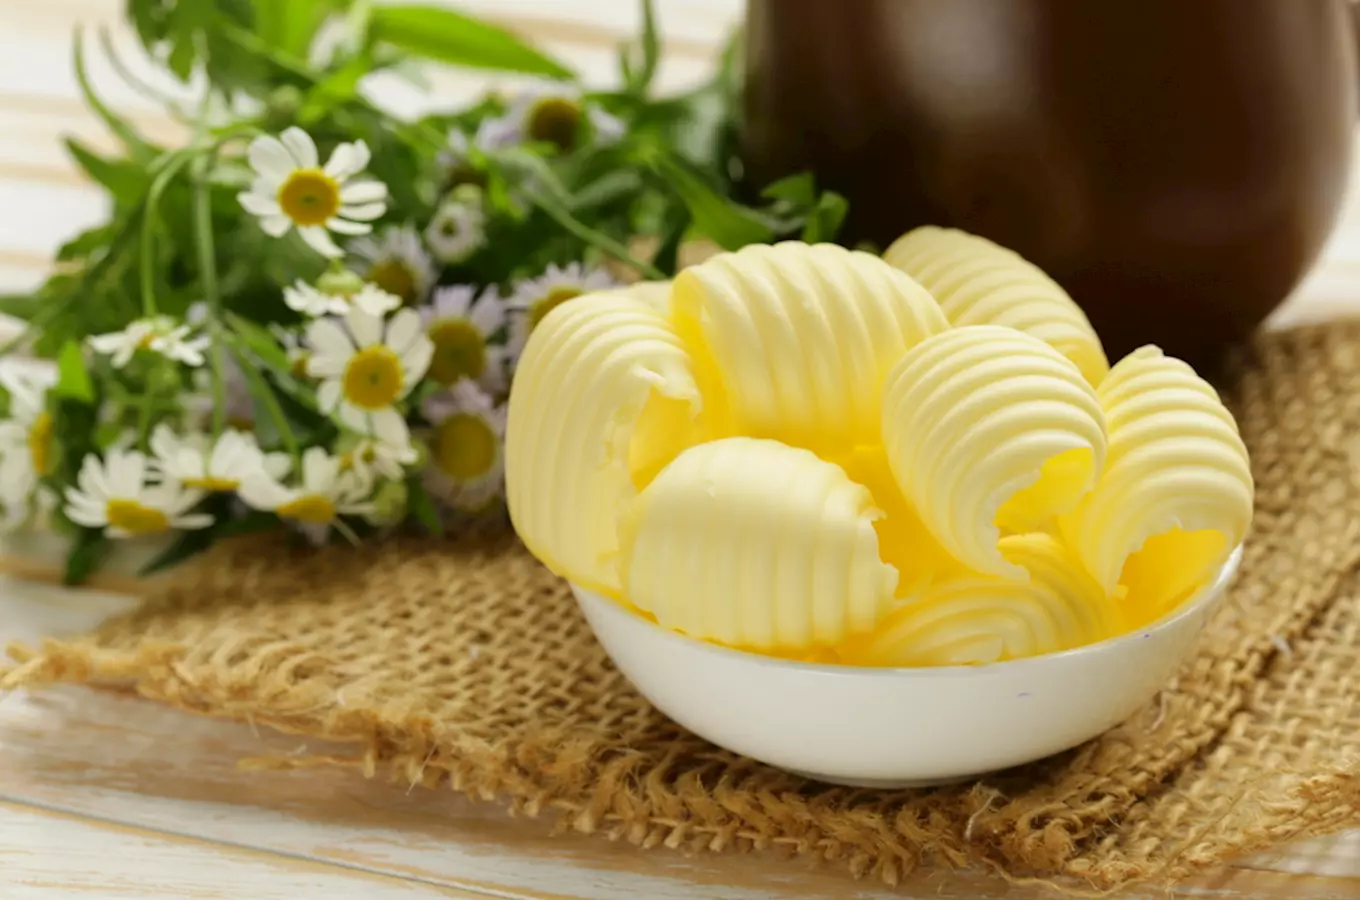 Muzeum másla v Máslovicích – jediné muzeum másla v České republice